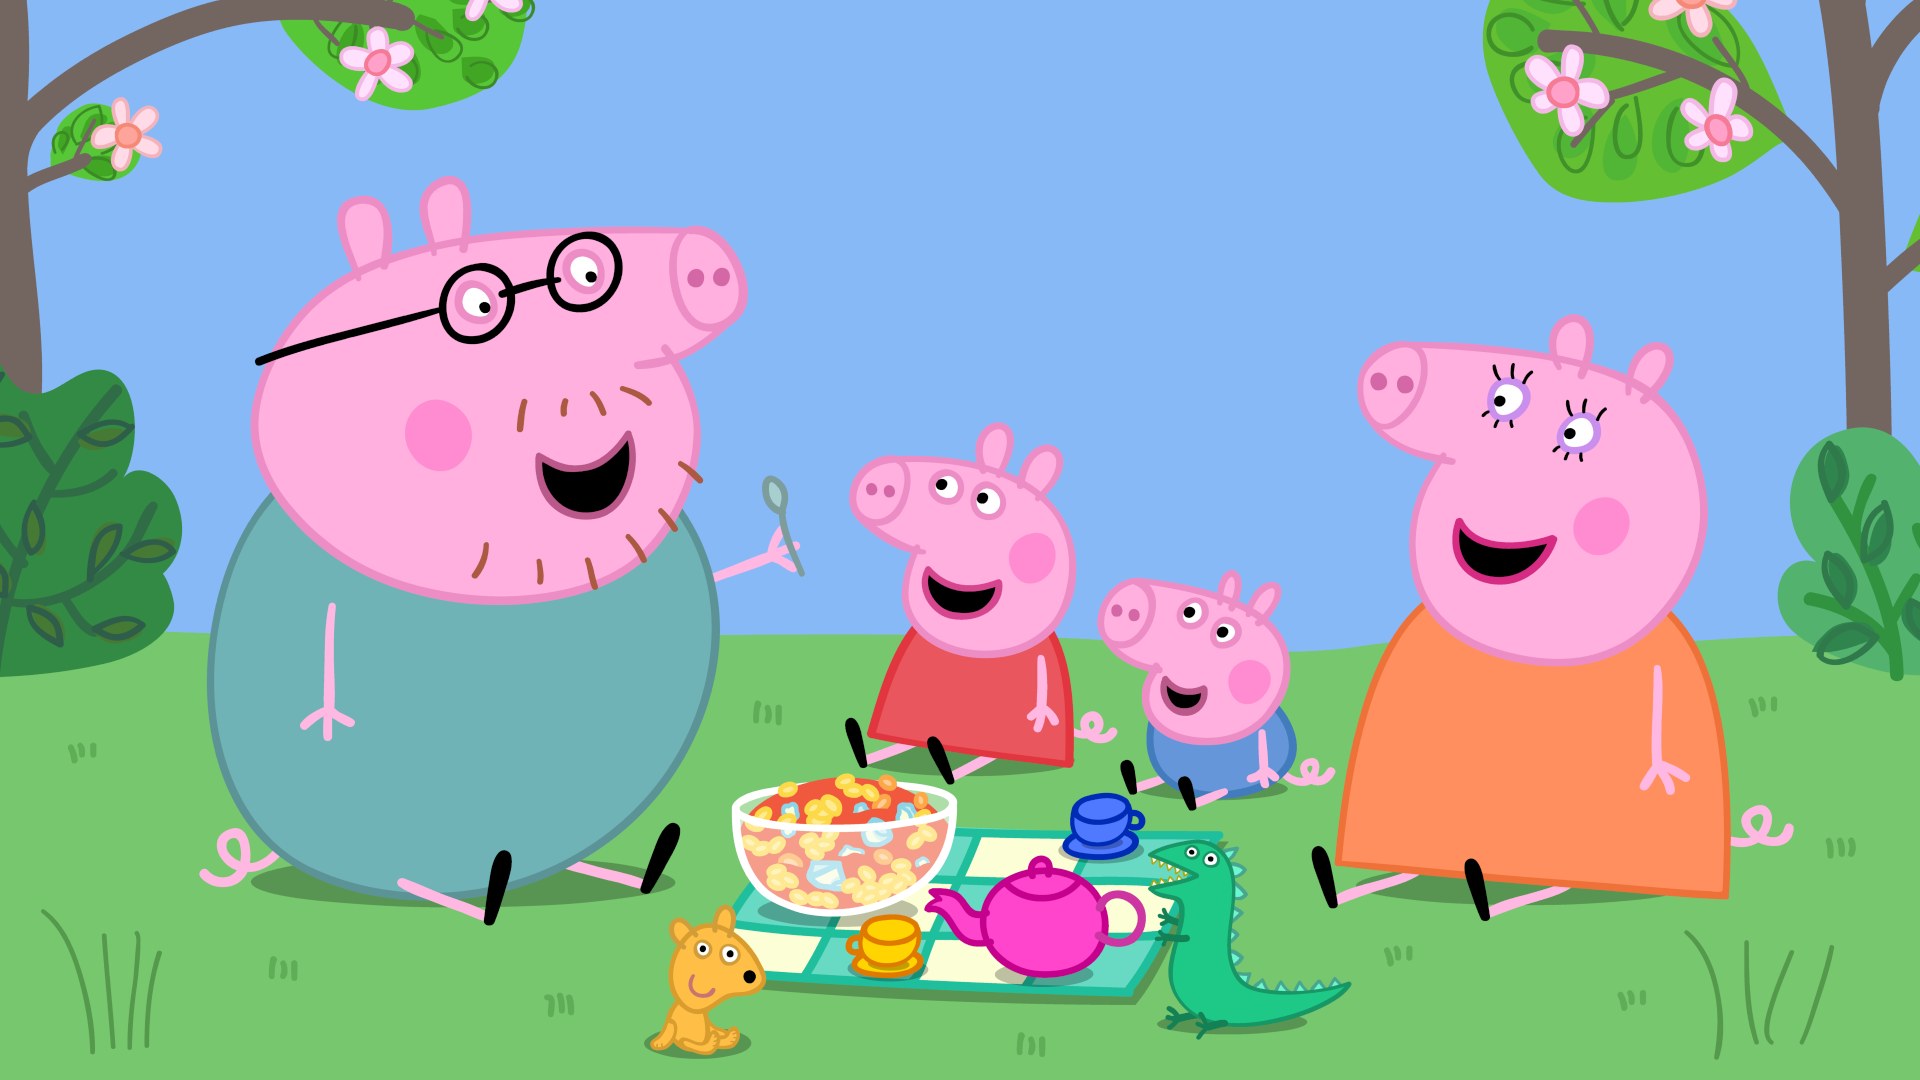 Desenho animado Peppa Pig vai ganhar dois parques de diversões